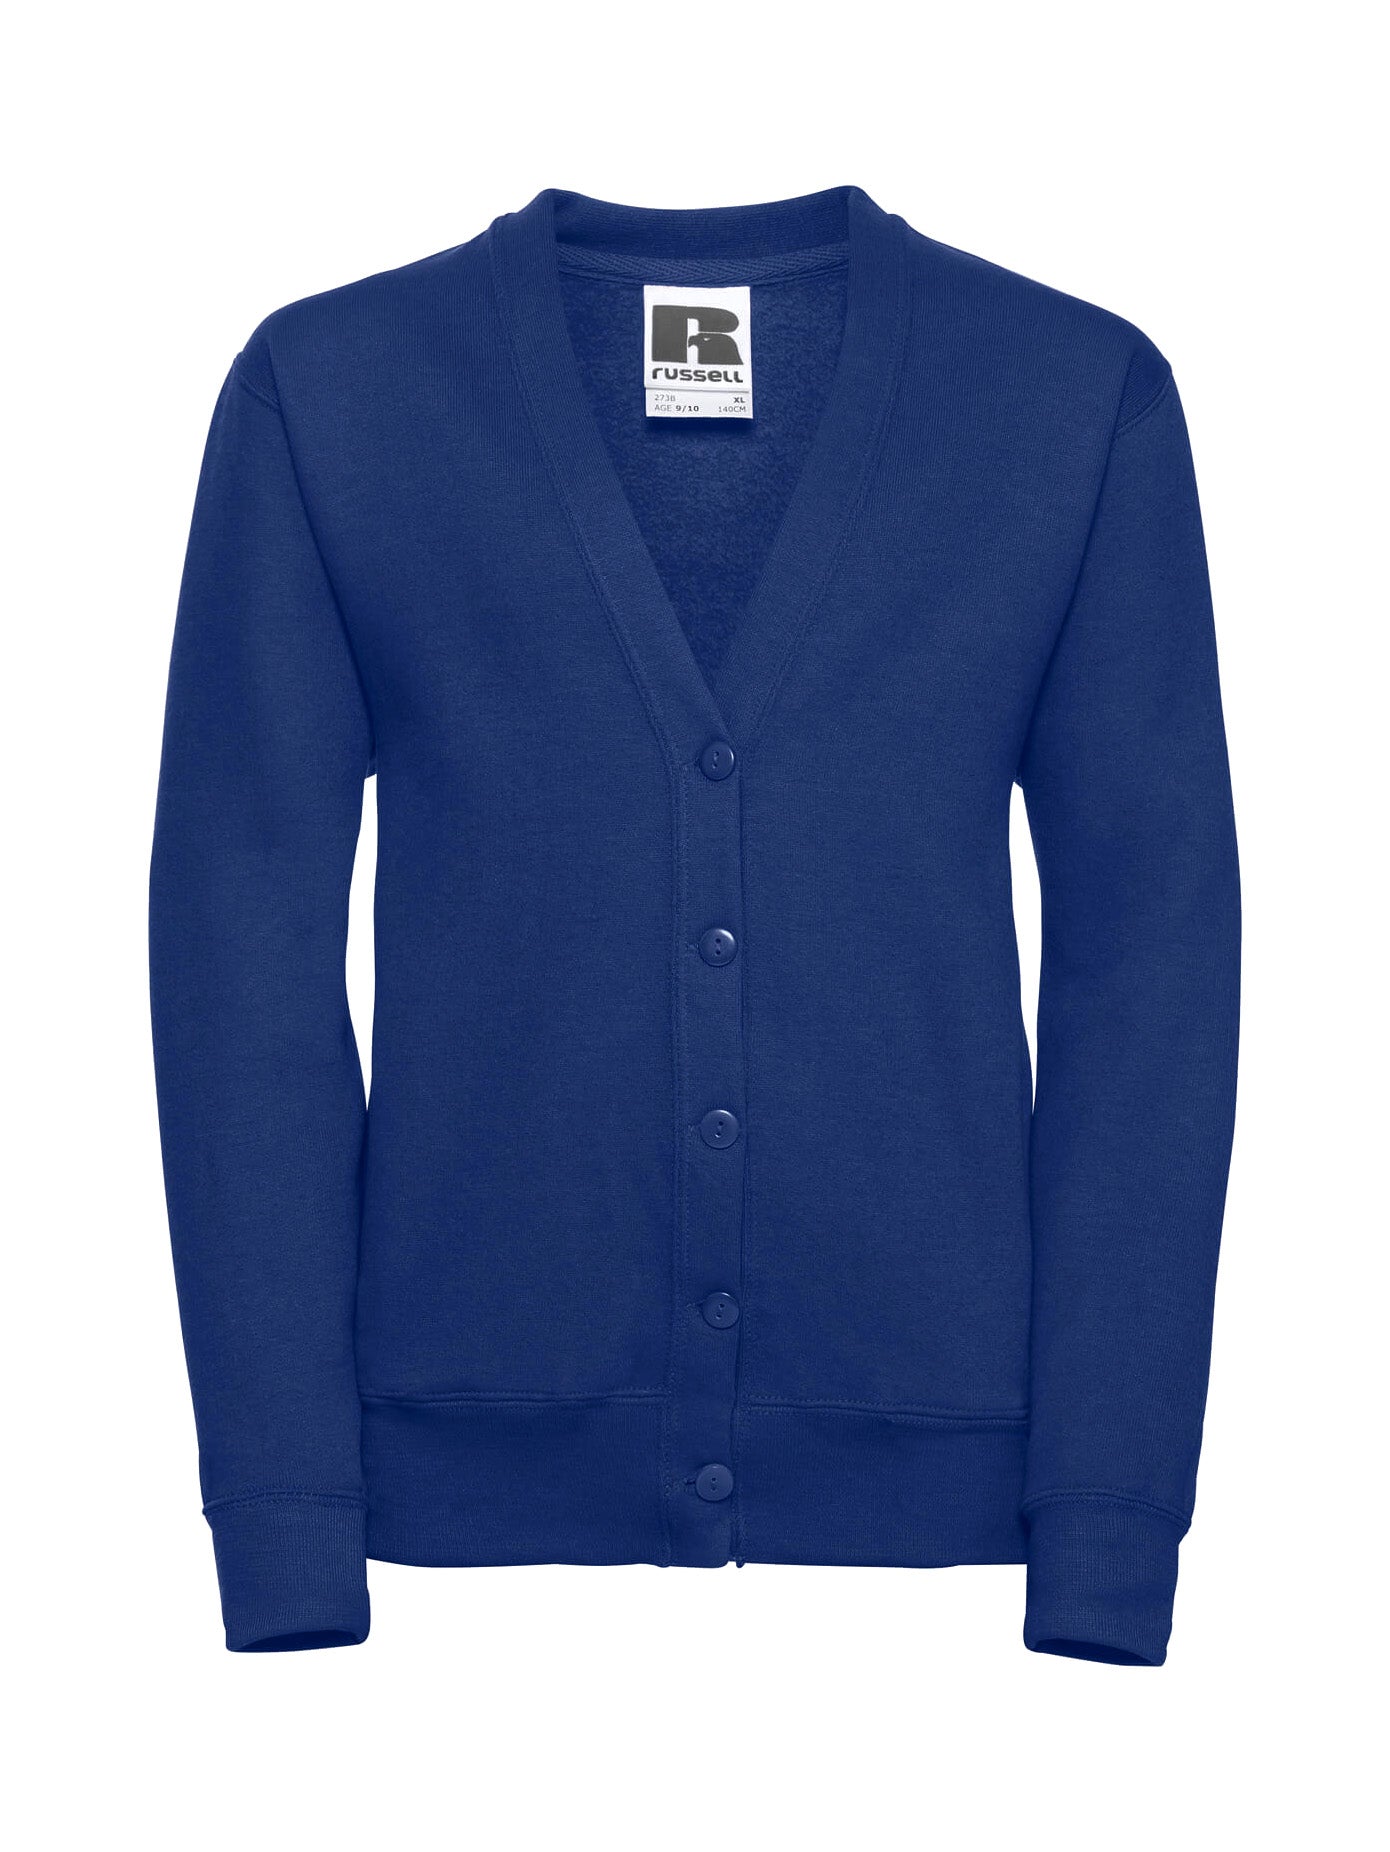 Quilted Sweatshirt Cardigan - Dark blue/planet - Kids